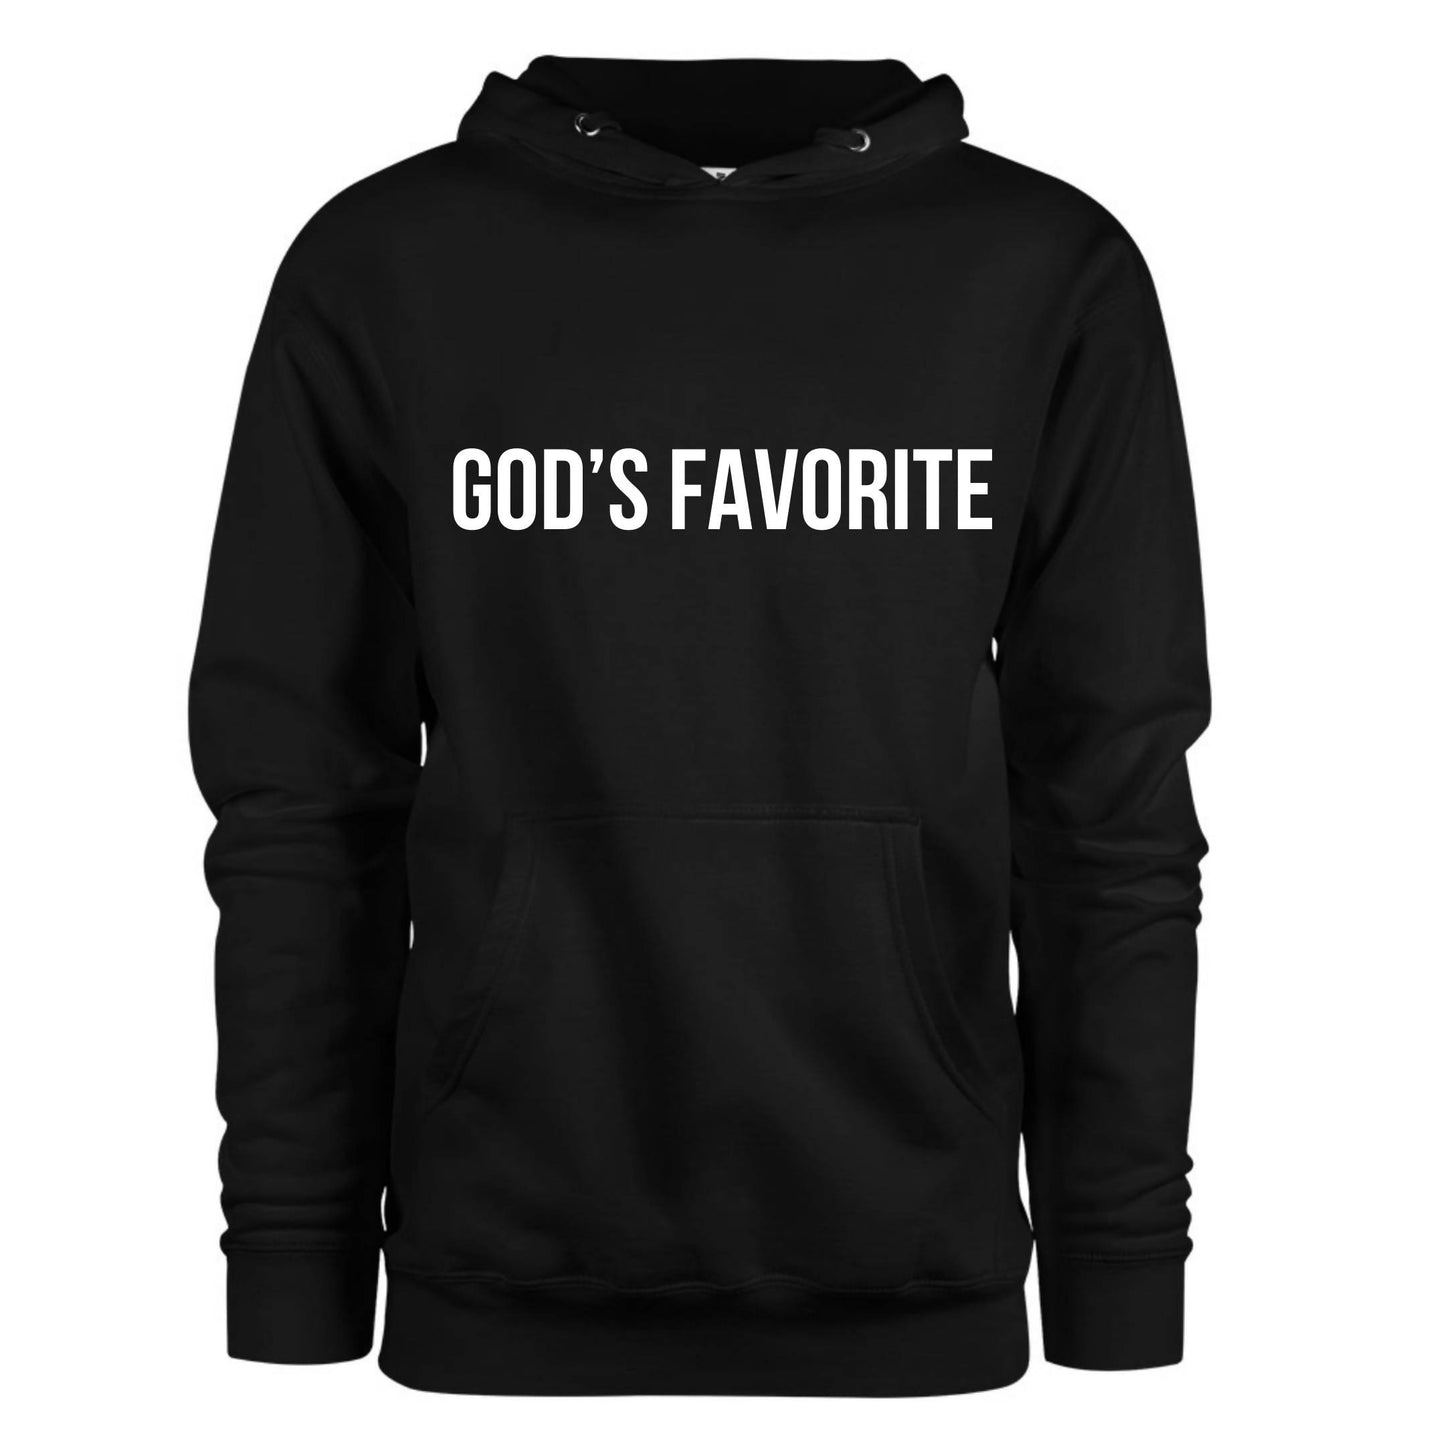 “God’s Favorite” Unisex Hoodie